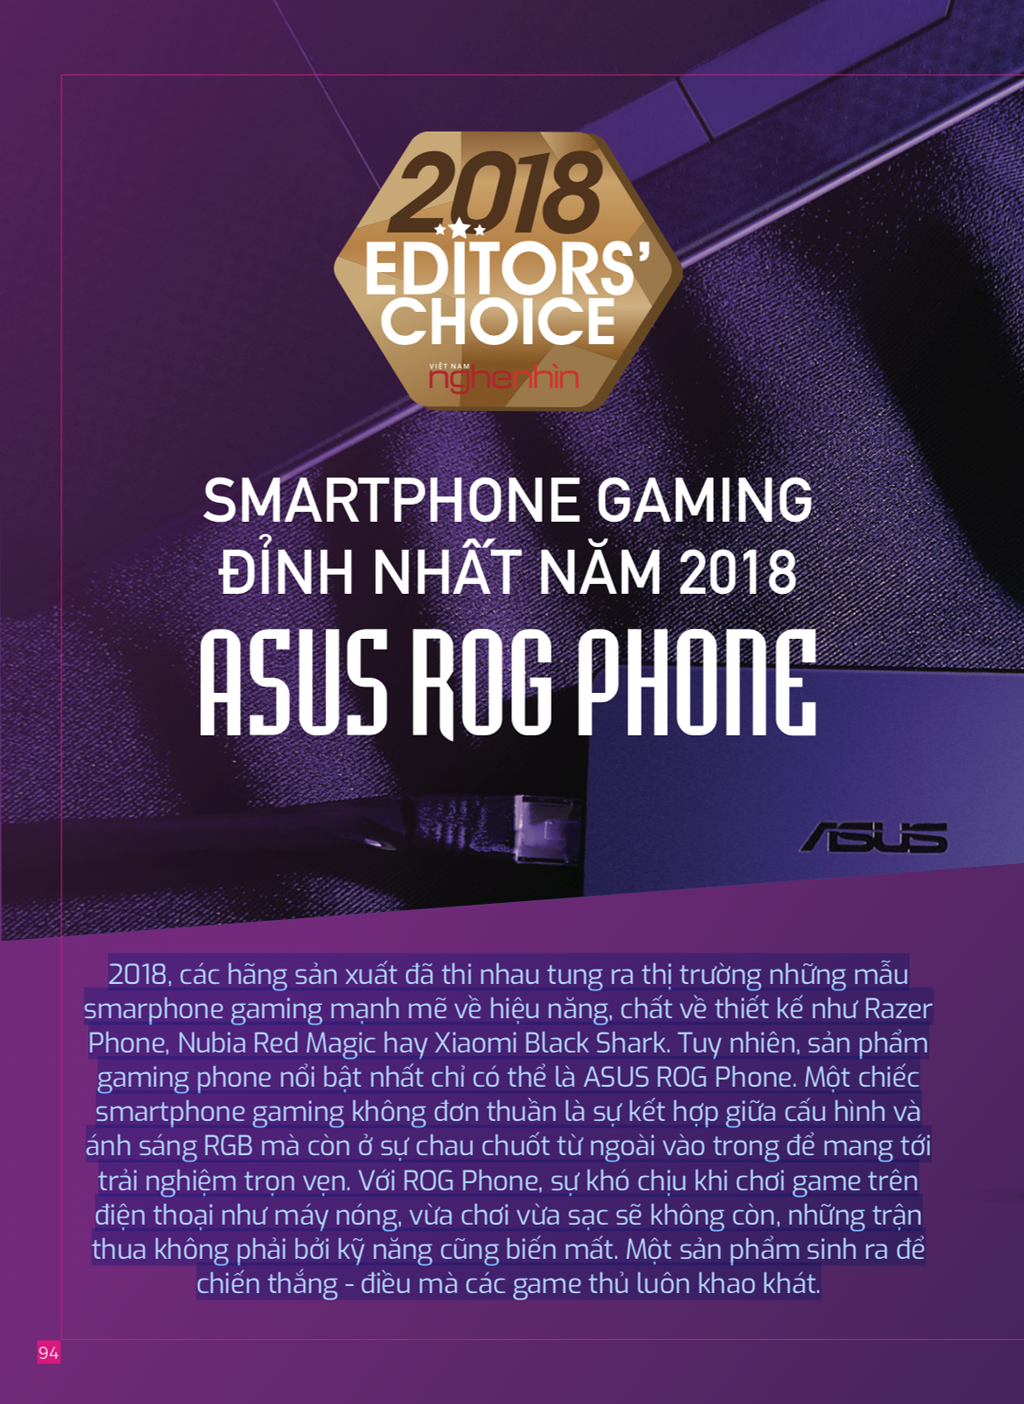 Editors Choice 2018: ASUS ROG Phone - Smartphone gaming đỉnh nhất năm 2018  ảnh 1